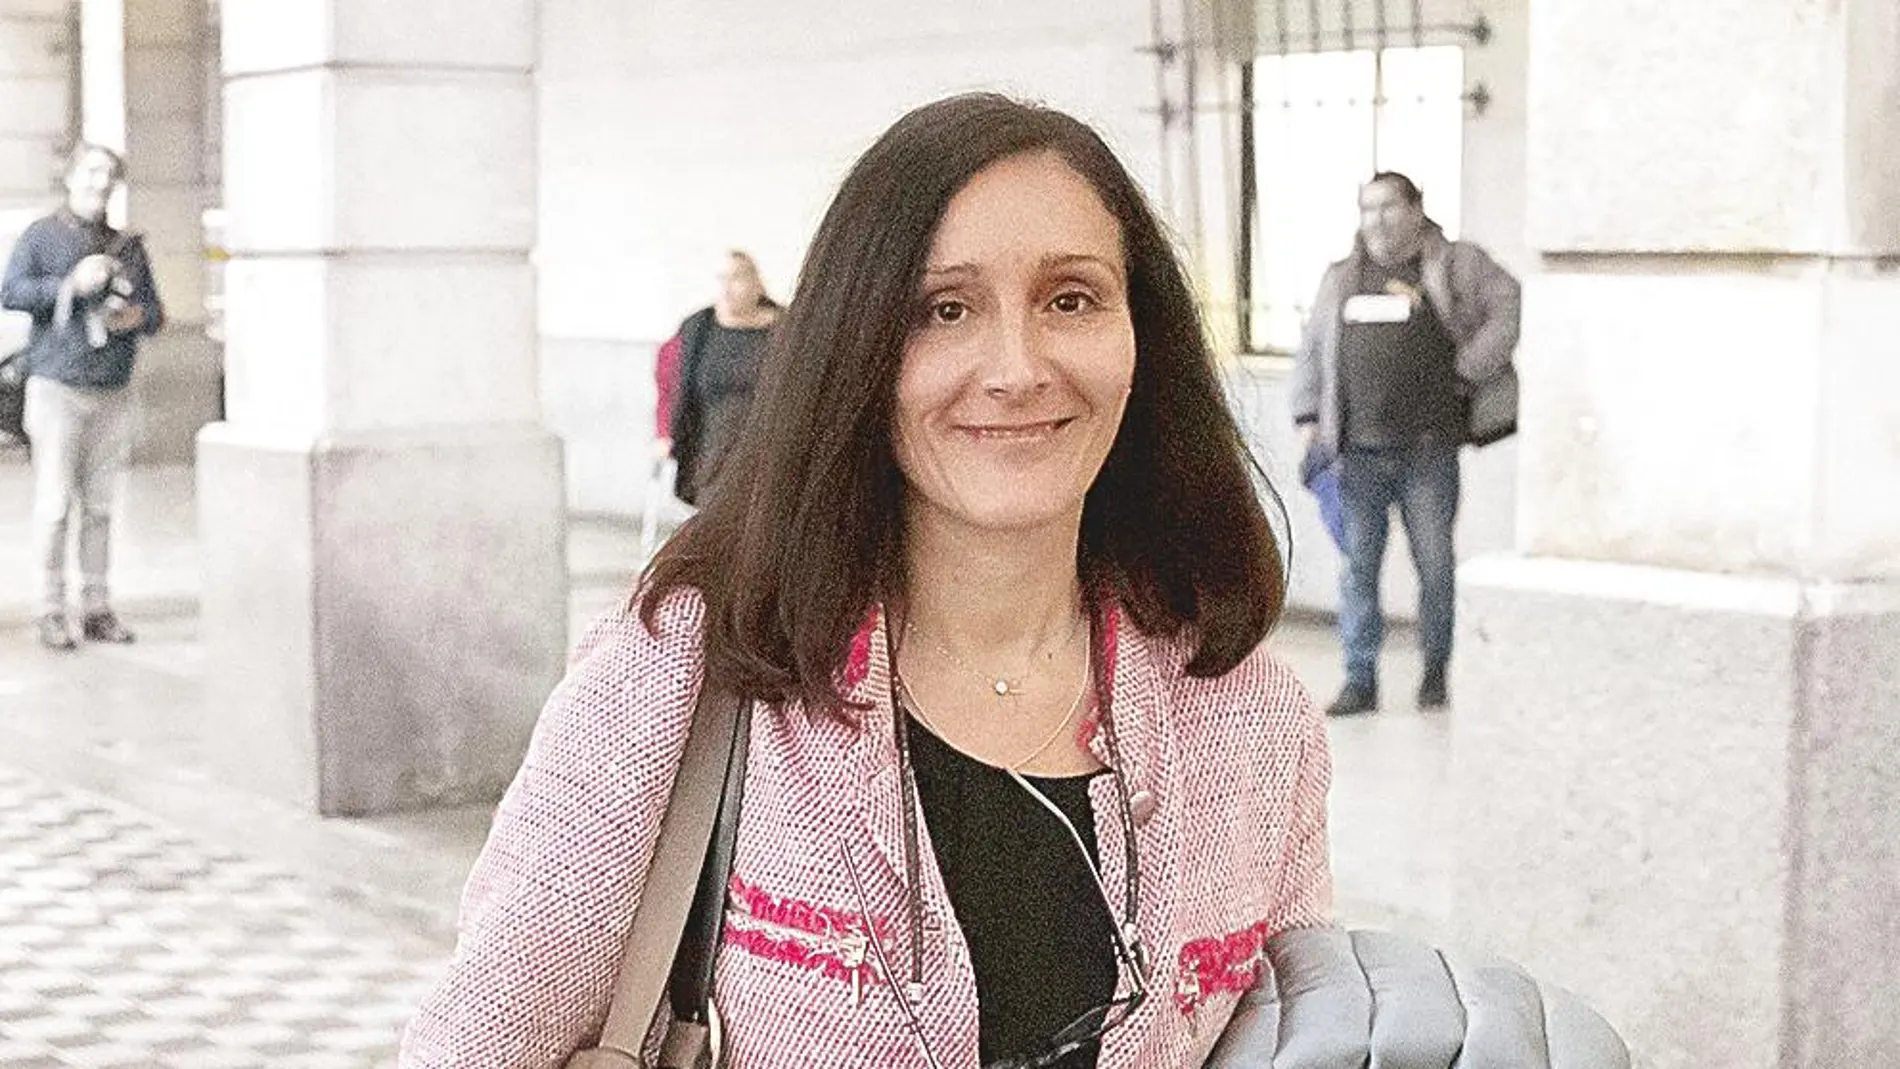 La titular del juzgado de Instrucción número 6 de Sevilla, María Núñez